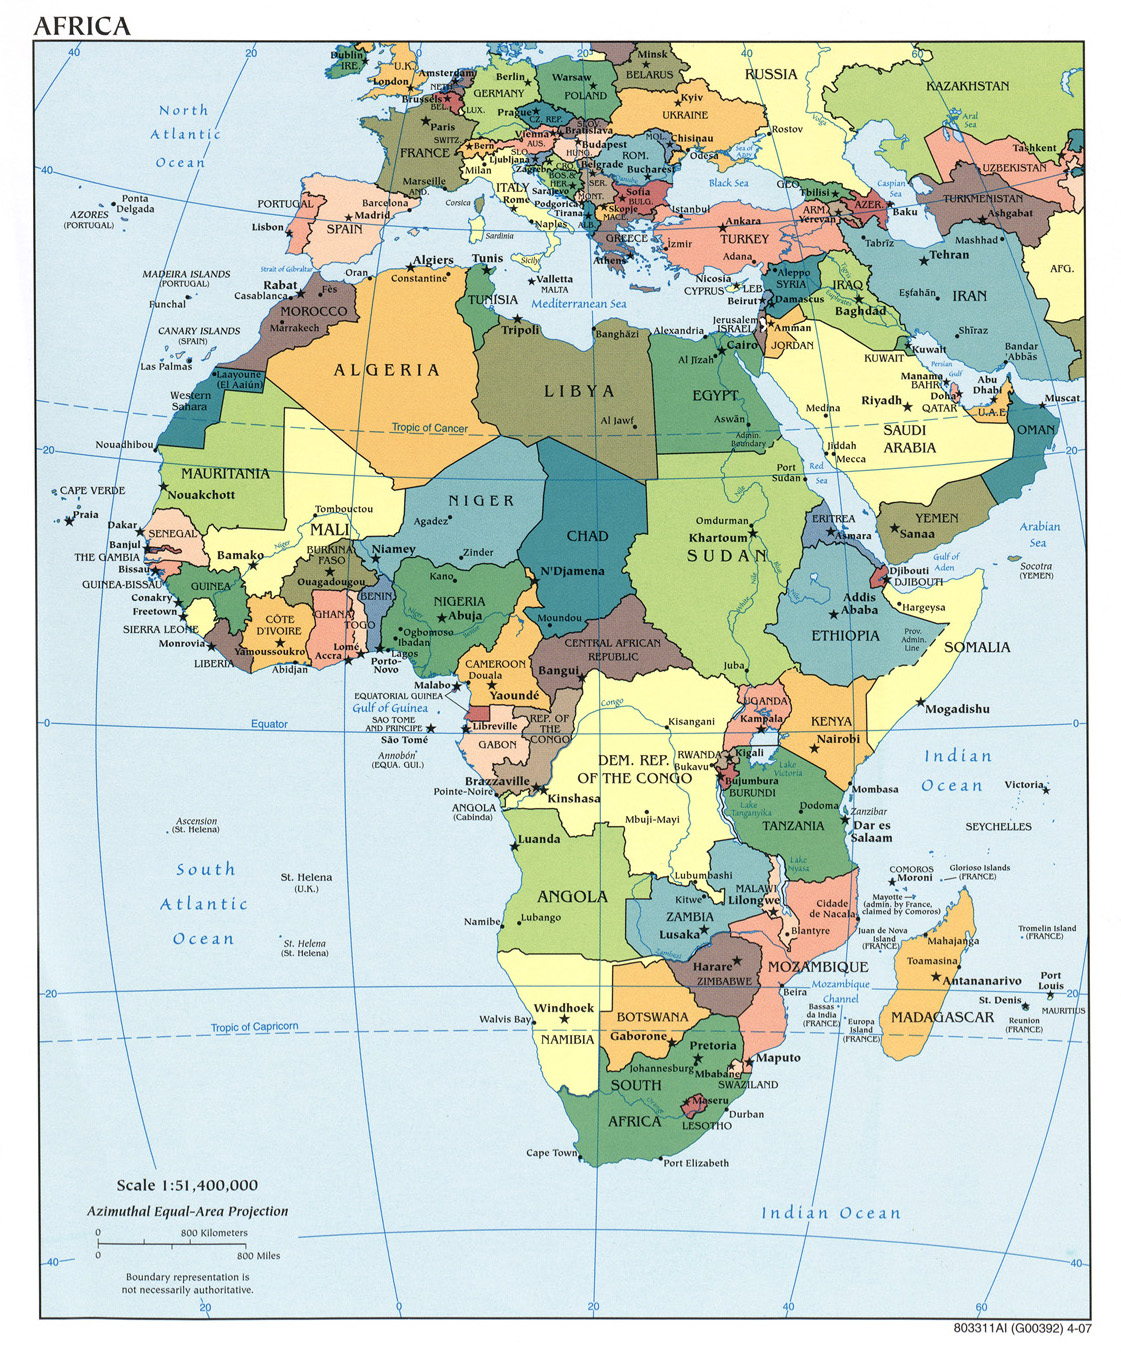 Mapa Politico de África 2007